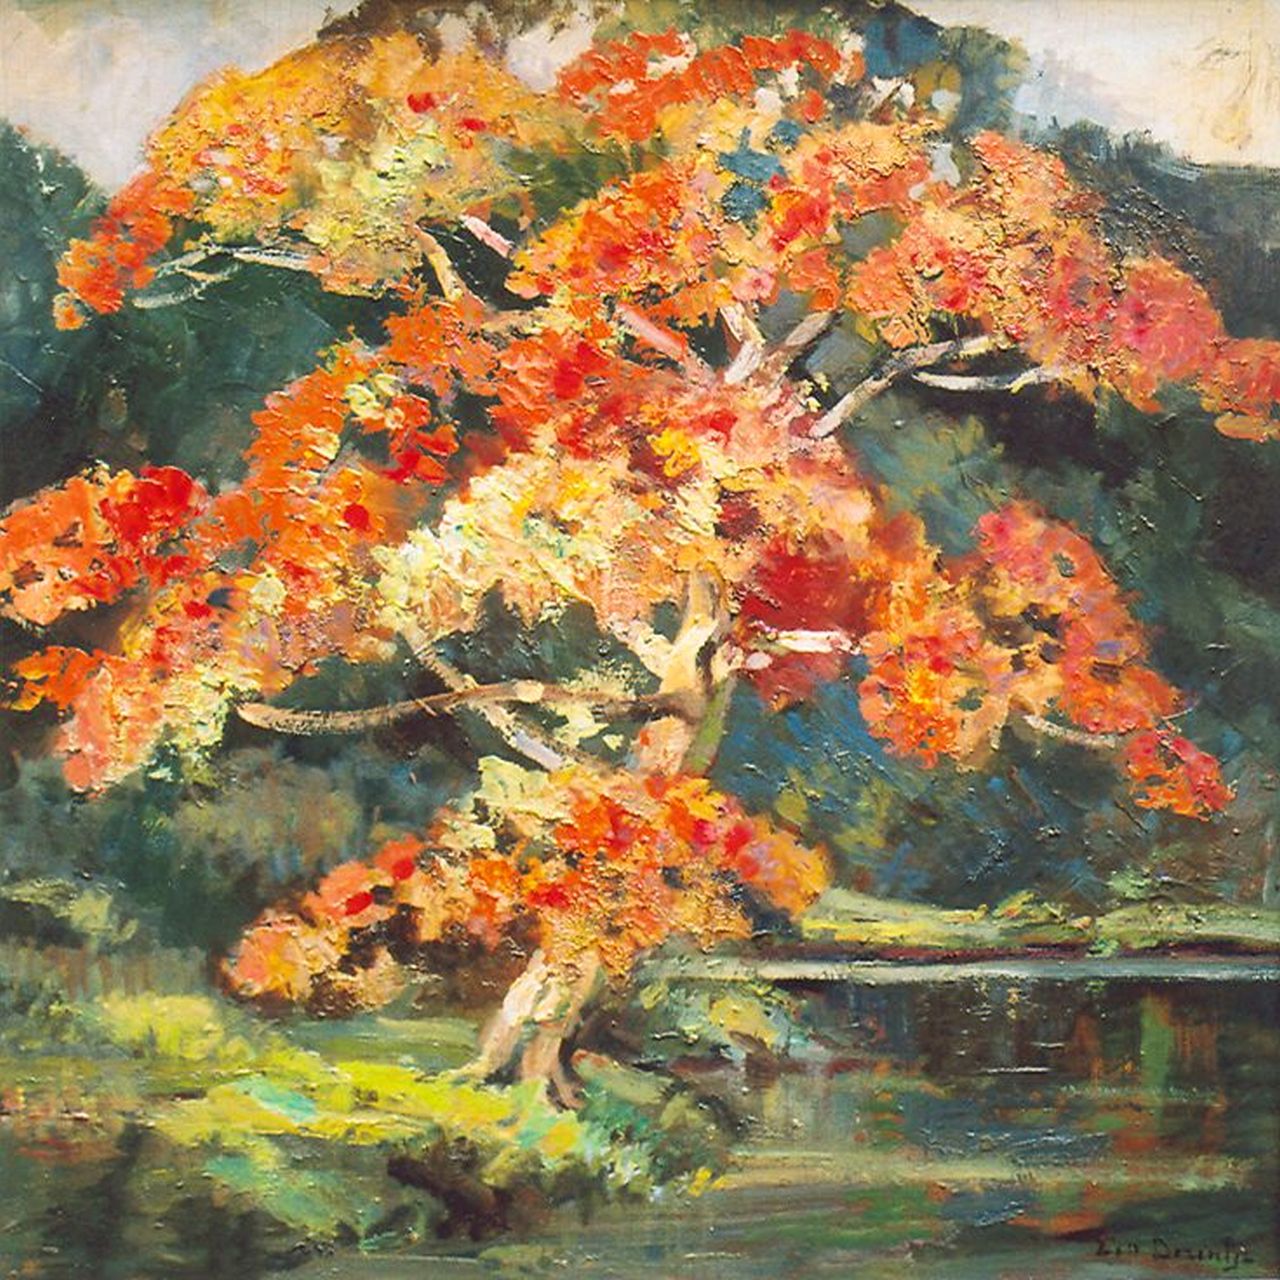 Dezentjé E.  | Ernest Dezentjé, Flowering tree, oil on panel 48.1 x 47.9 cm, signed l.r.